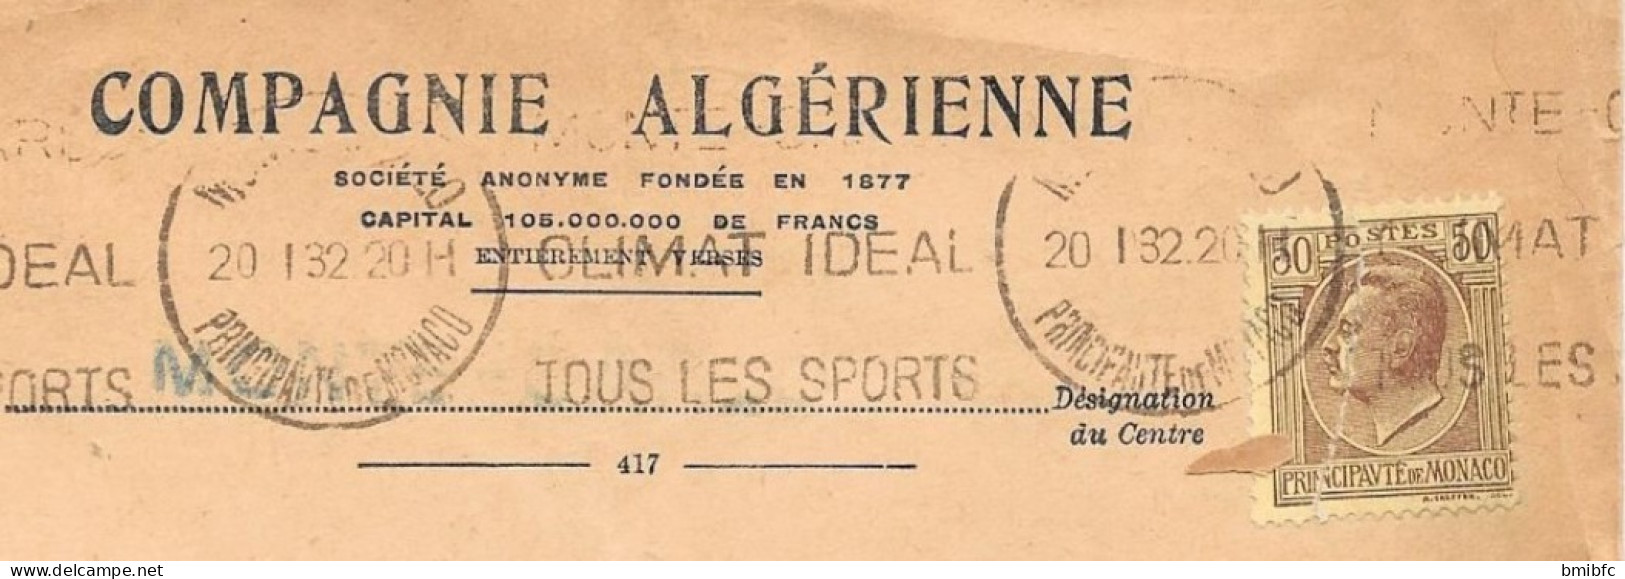 Principauté De Monaco  Sur Lettre  1932 - Covers & Documents